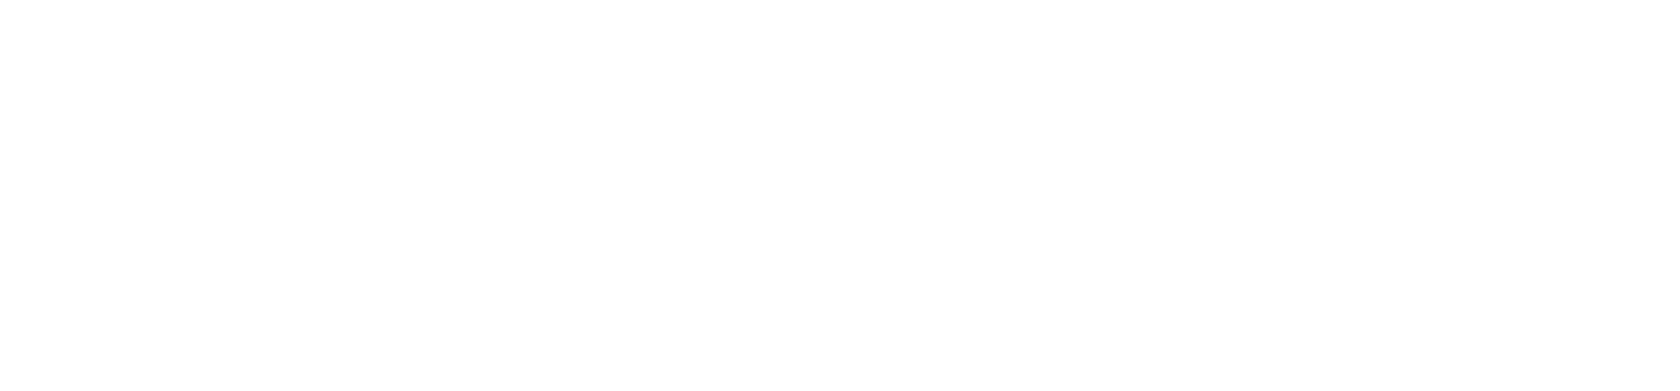 Торцевая заглушка Flexy TOREC GIPS LINE 35 IN для профилей Flexy: размер, вид, применение, способ монтажа в Беларуси (РБ)